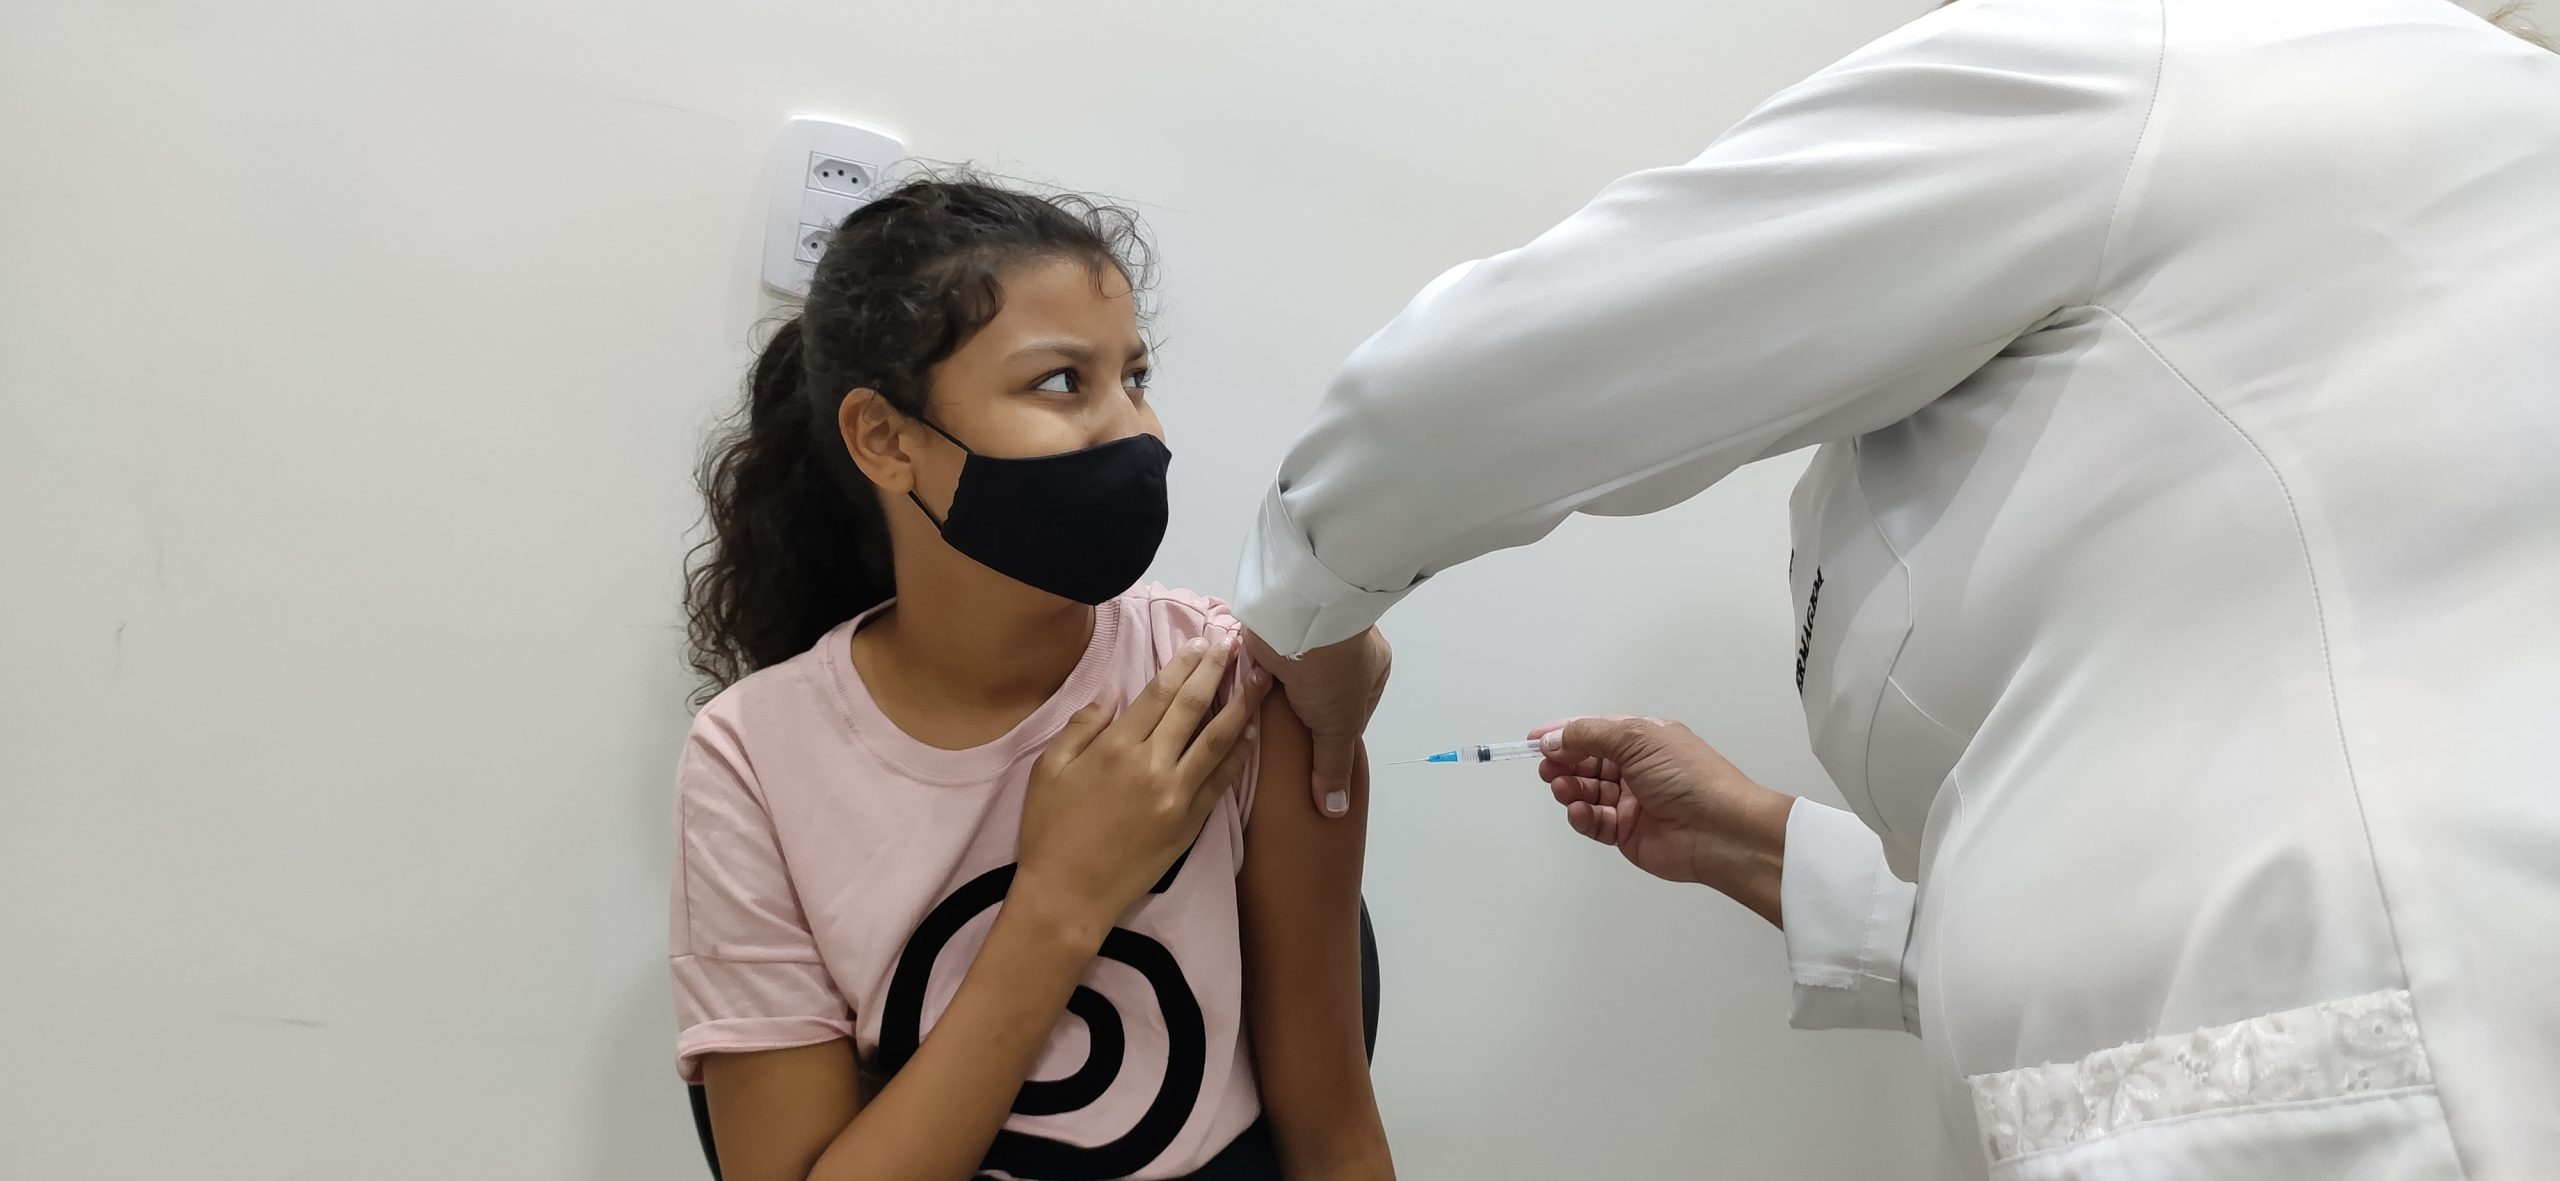 Campo Grande inicia vacinação de crianças de 5 a 11 anos contra a Covid-19 neste sábado